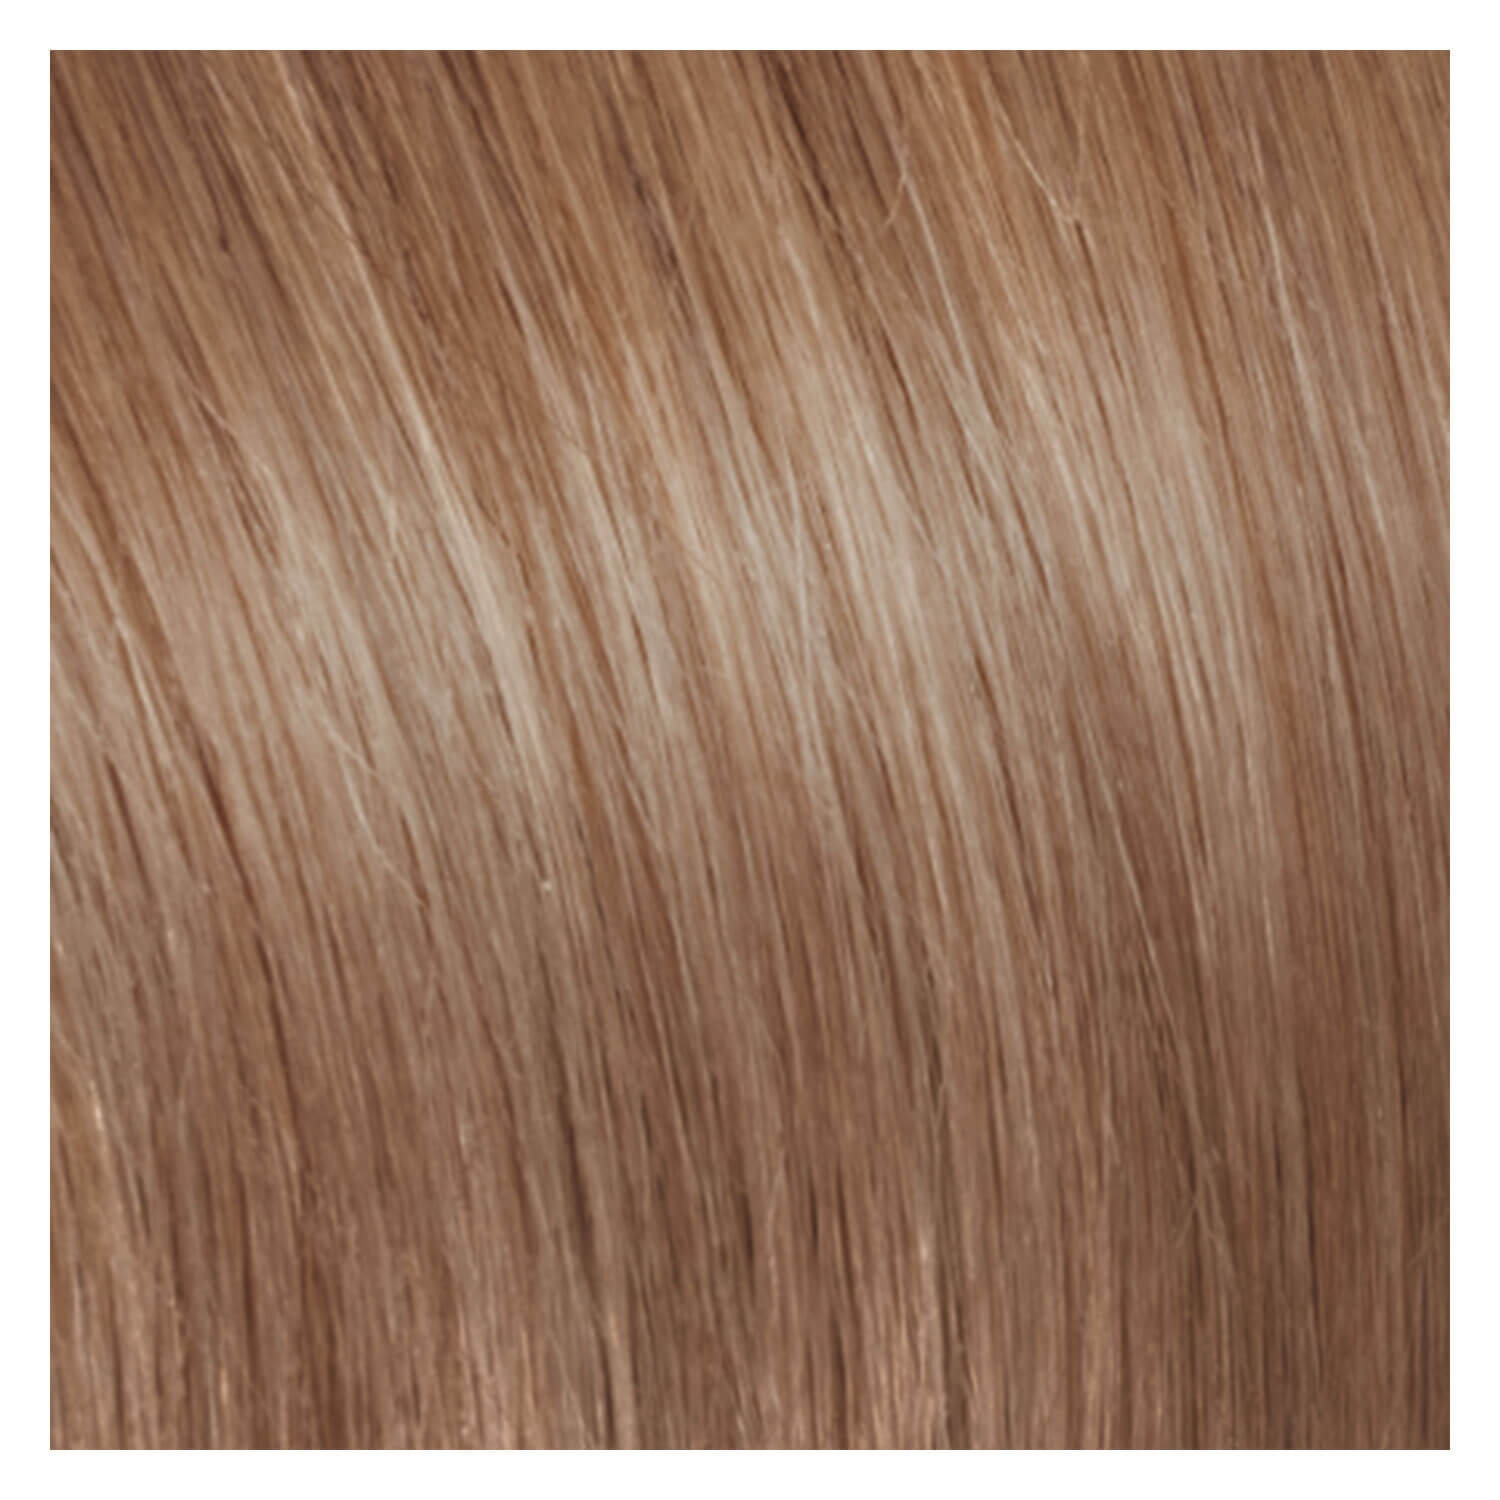 Produktbild von SHE Clip In-System Hair Extensions - 27 Mittel Goldblond 50/55cm